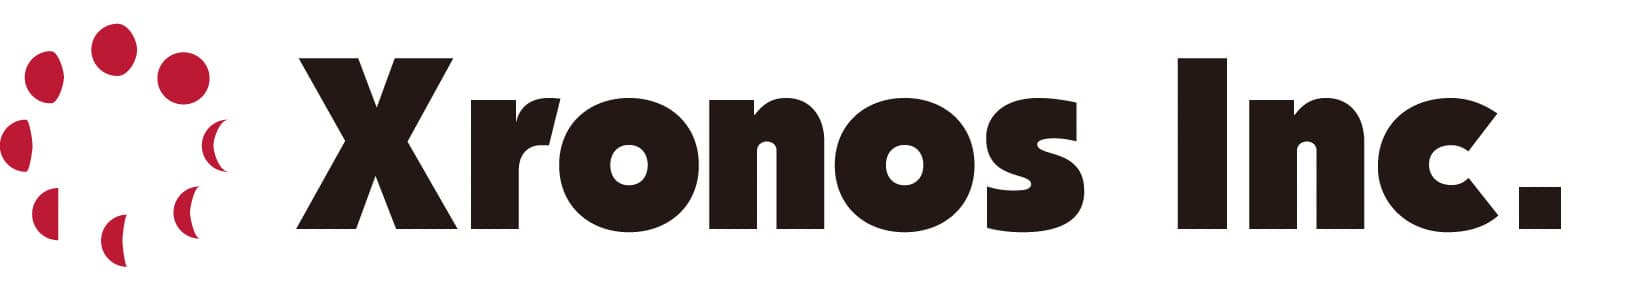 Xronos, Inc. logo